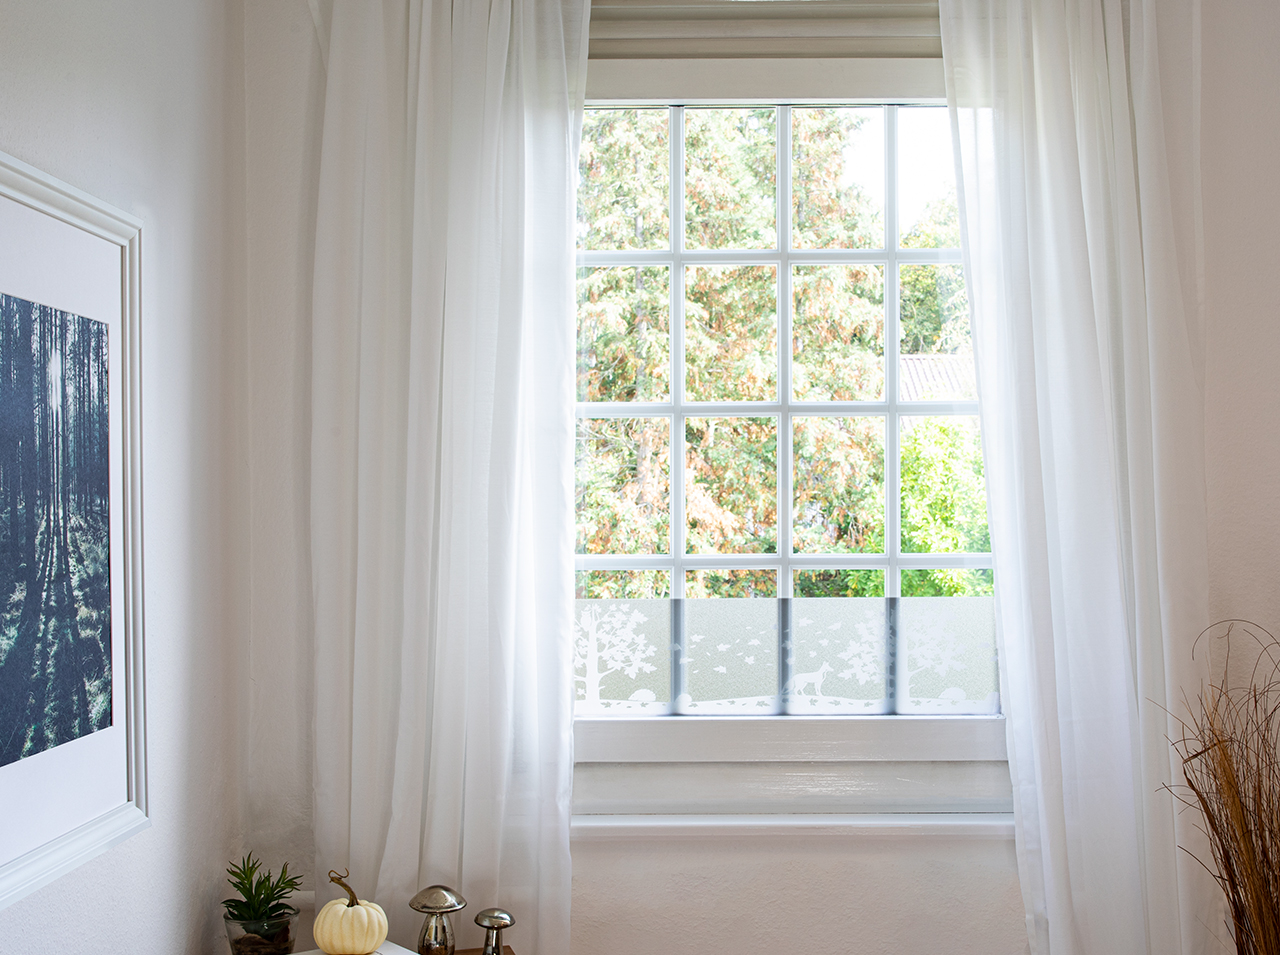 Film pour fenêtre avec la silhouette d’un paysage forestier en blanc posé comme décoration sur la fenêtre.